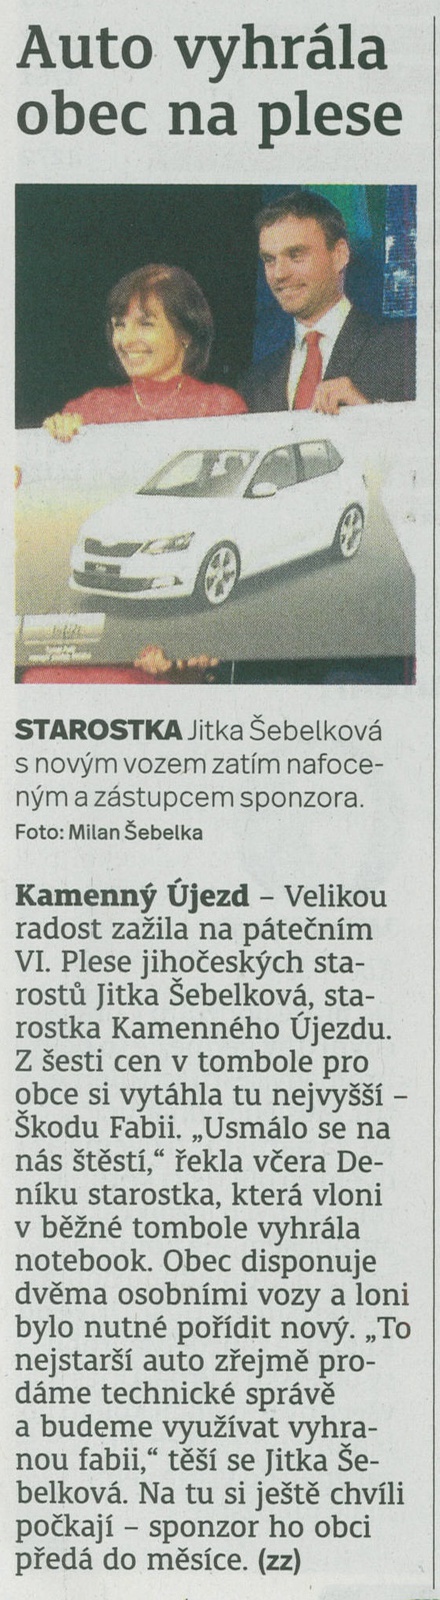 Obec Kamenný Újezd vyhrála osobní automobil